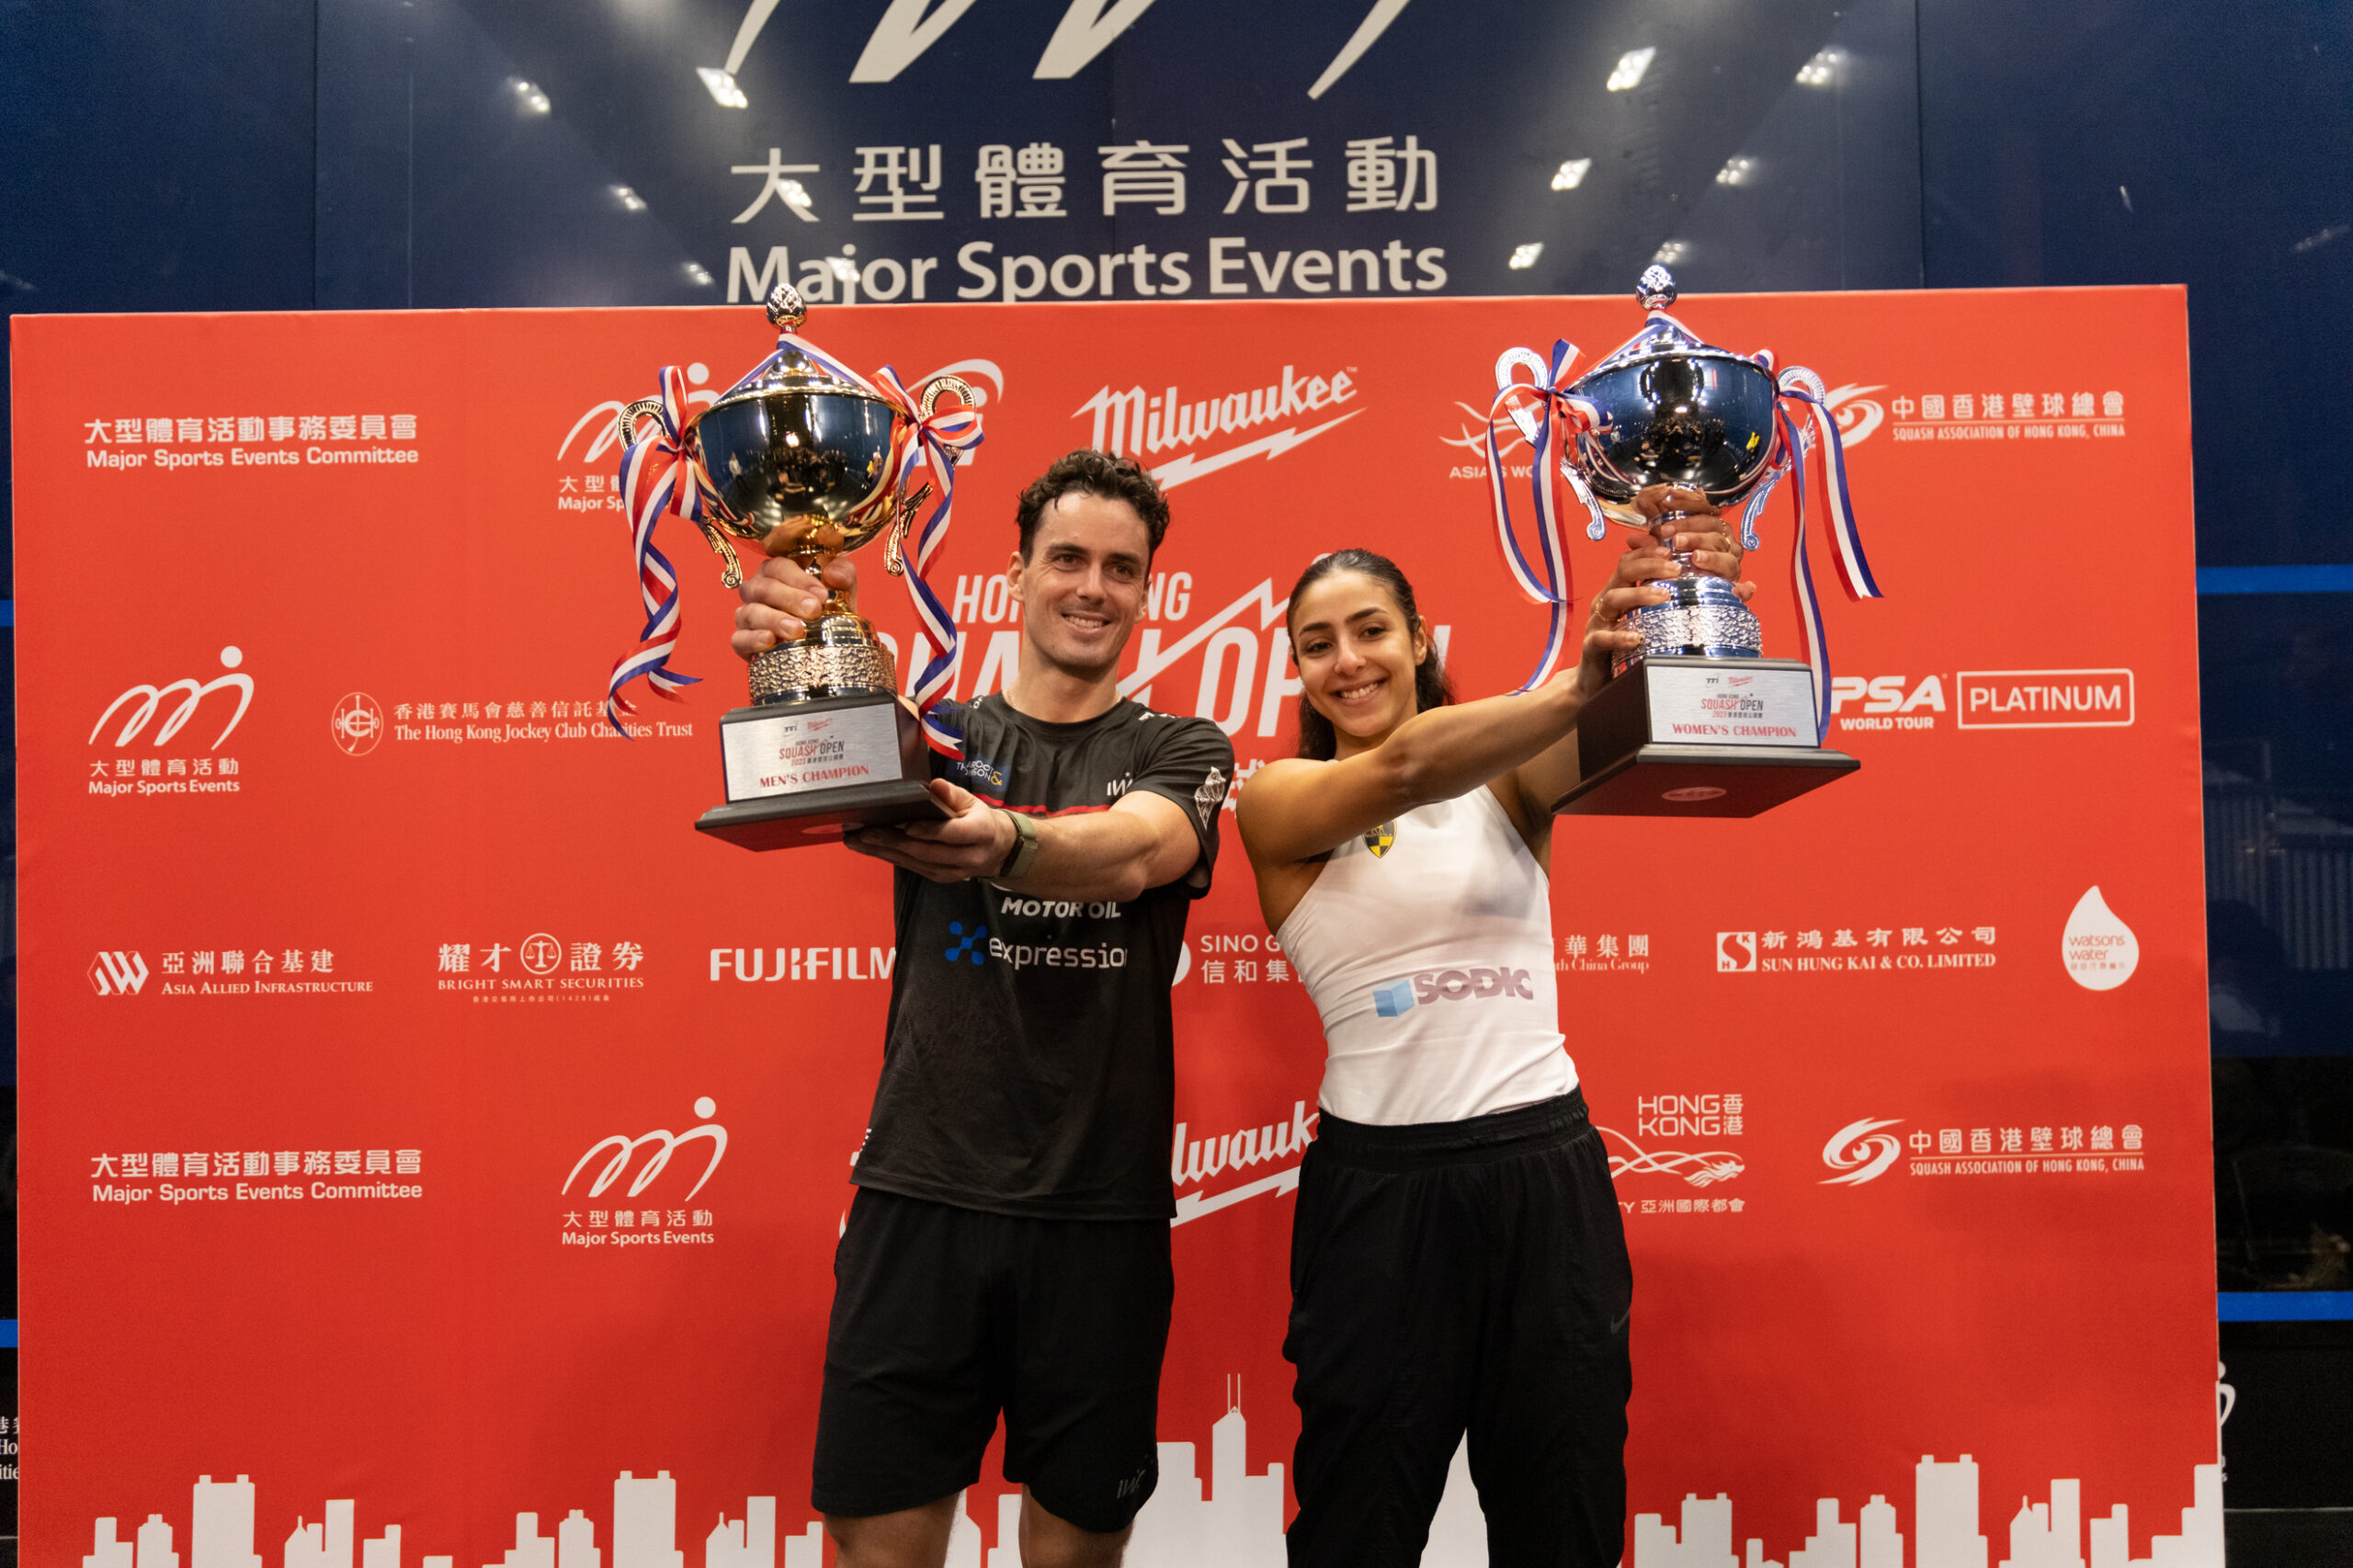 PSA round-up: Coll and El Hammamy capture Hong Kong Squash titles